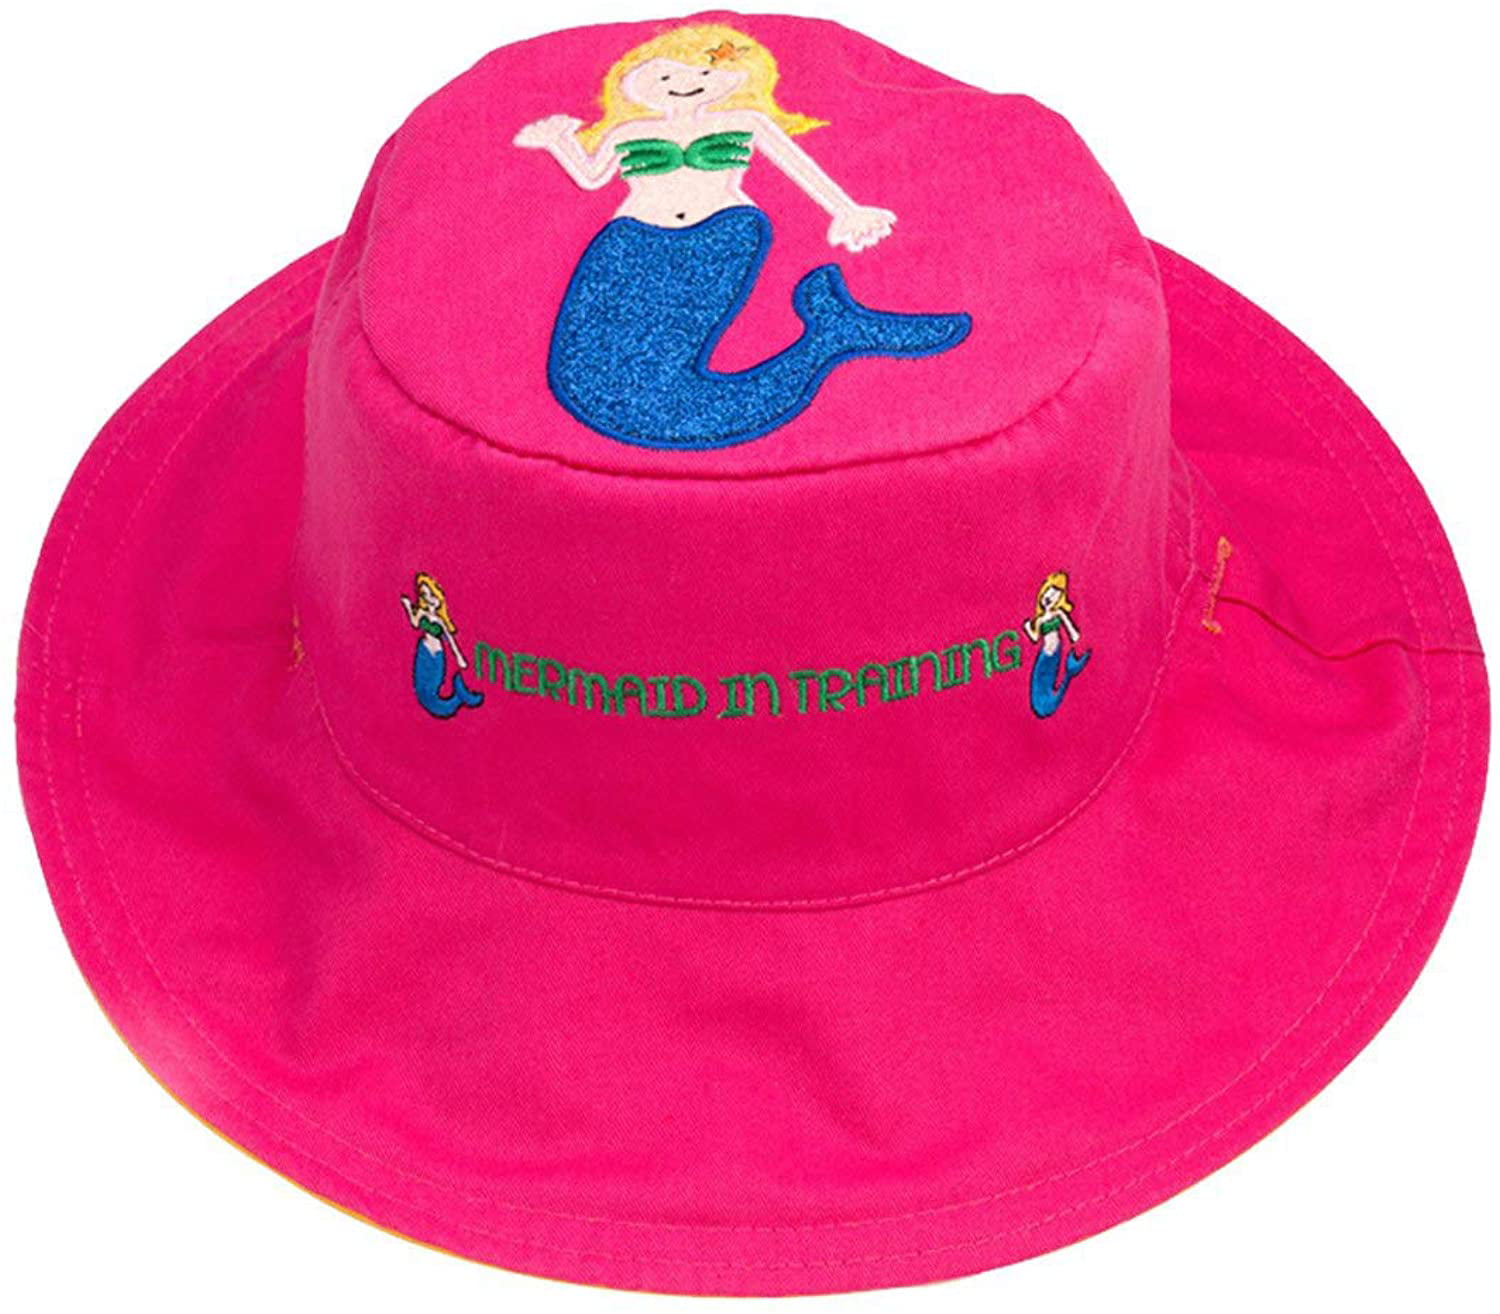 Luvali Mermaid-Sandcastle Reversible Kid's Sun Hat Medium 2-4 years 